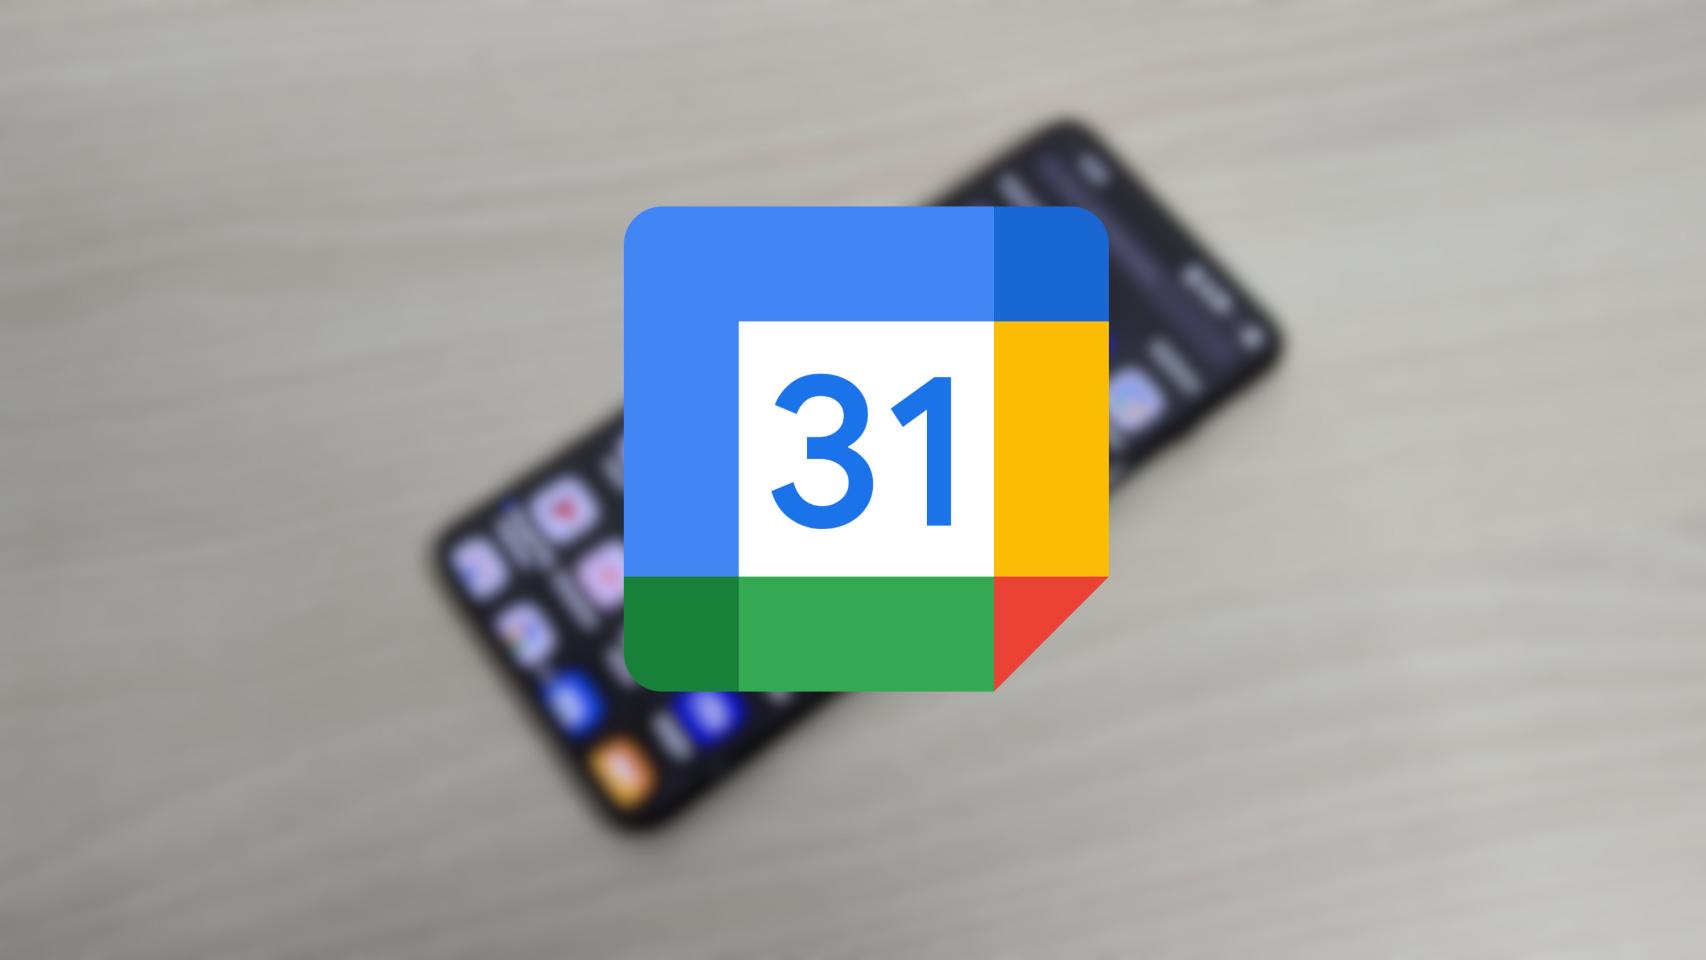 Icono de Google Calendar sobre un móvil